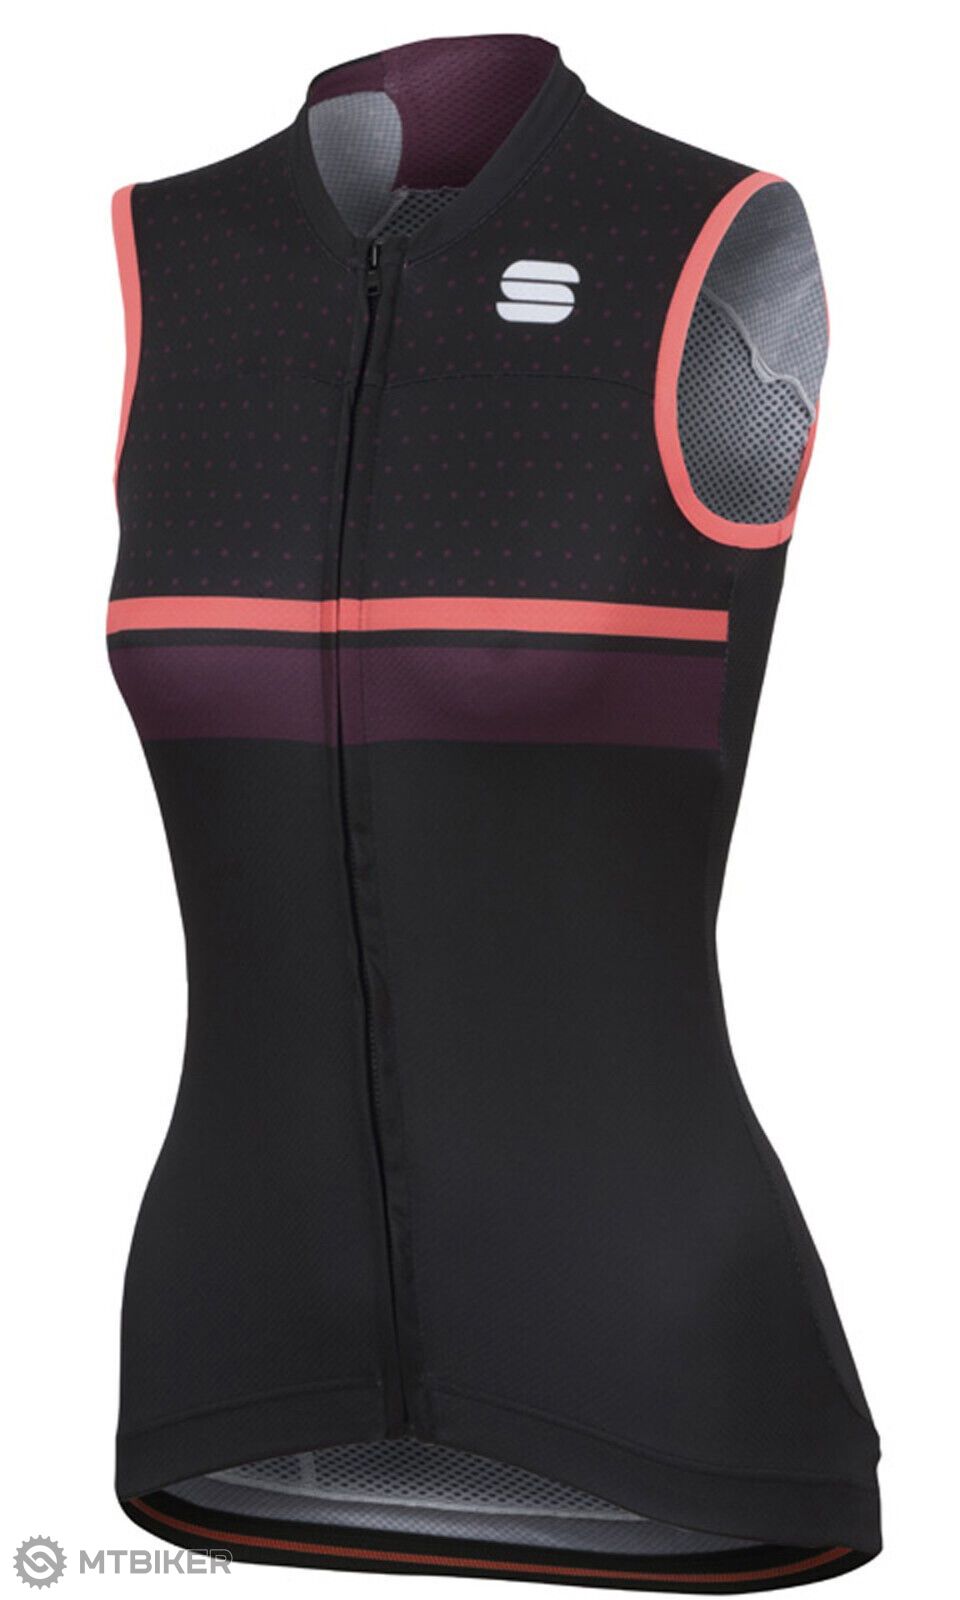 Rezervované - Sportful Diva W Cycling Jersey Anatomic Fit DryPro Fabric ...